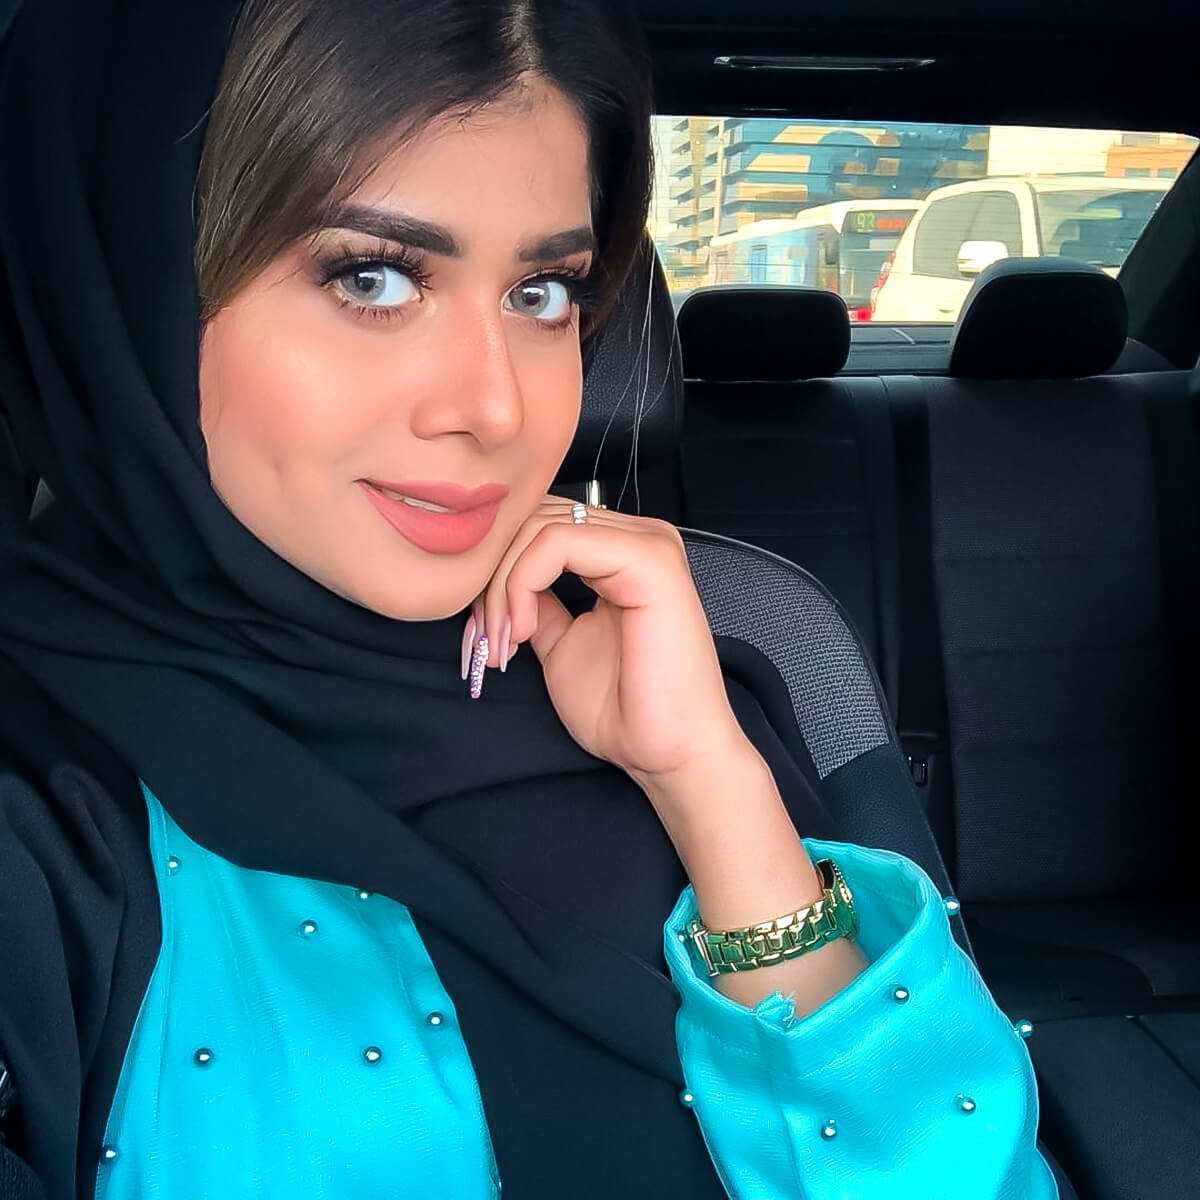 مطلقات للزواج في الكويت دليل شامل